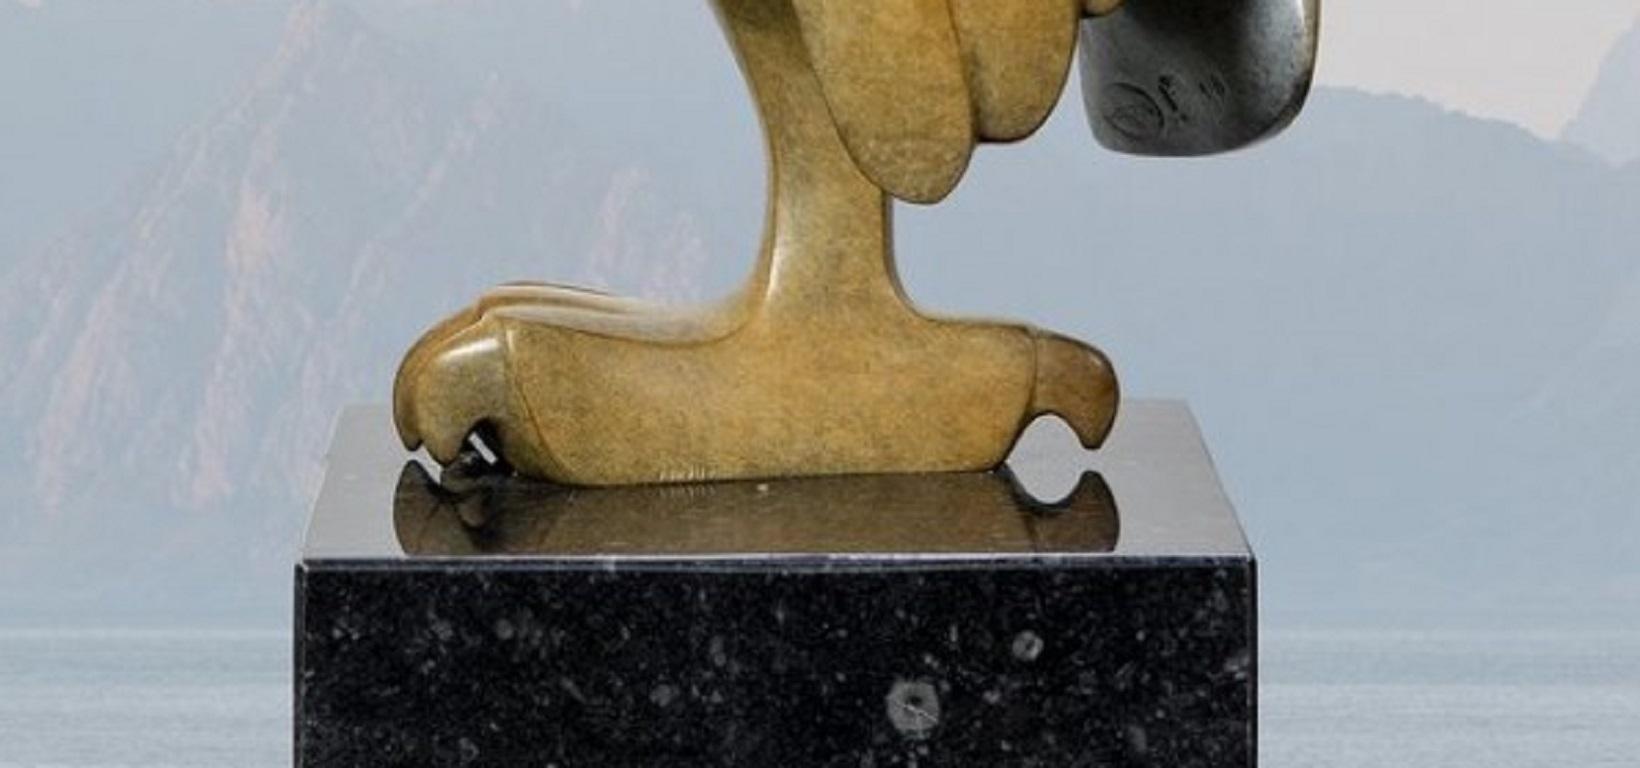 Opkijkende Uil Nr. 2 Eule nach oben schauend Bronzeskulptur Tier Vorrätig (Gold), Figurative Sculpture, von Evert den Hartog